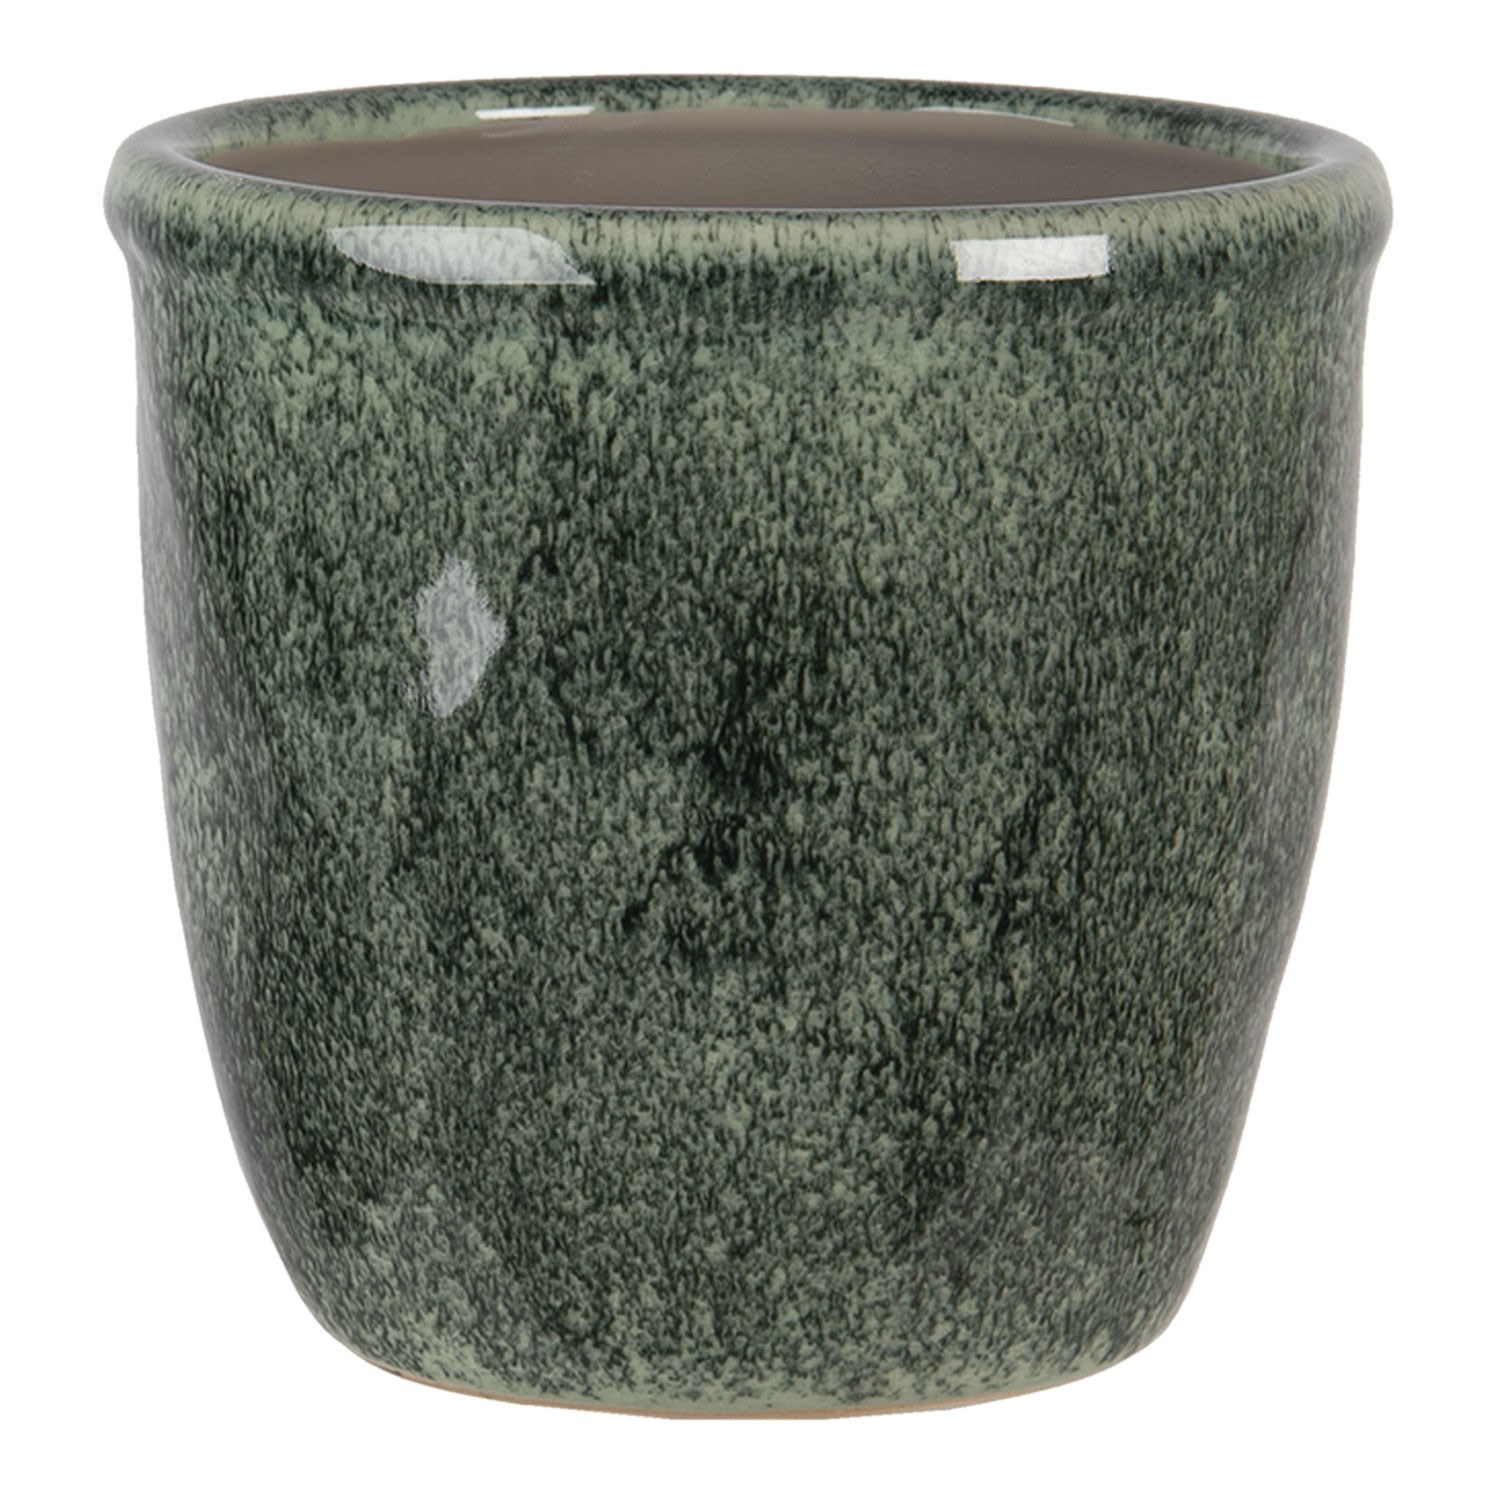 Šedo - zelený mramorovaný obal na květináč XL - Ø 16*15 cm 6CE1259XL